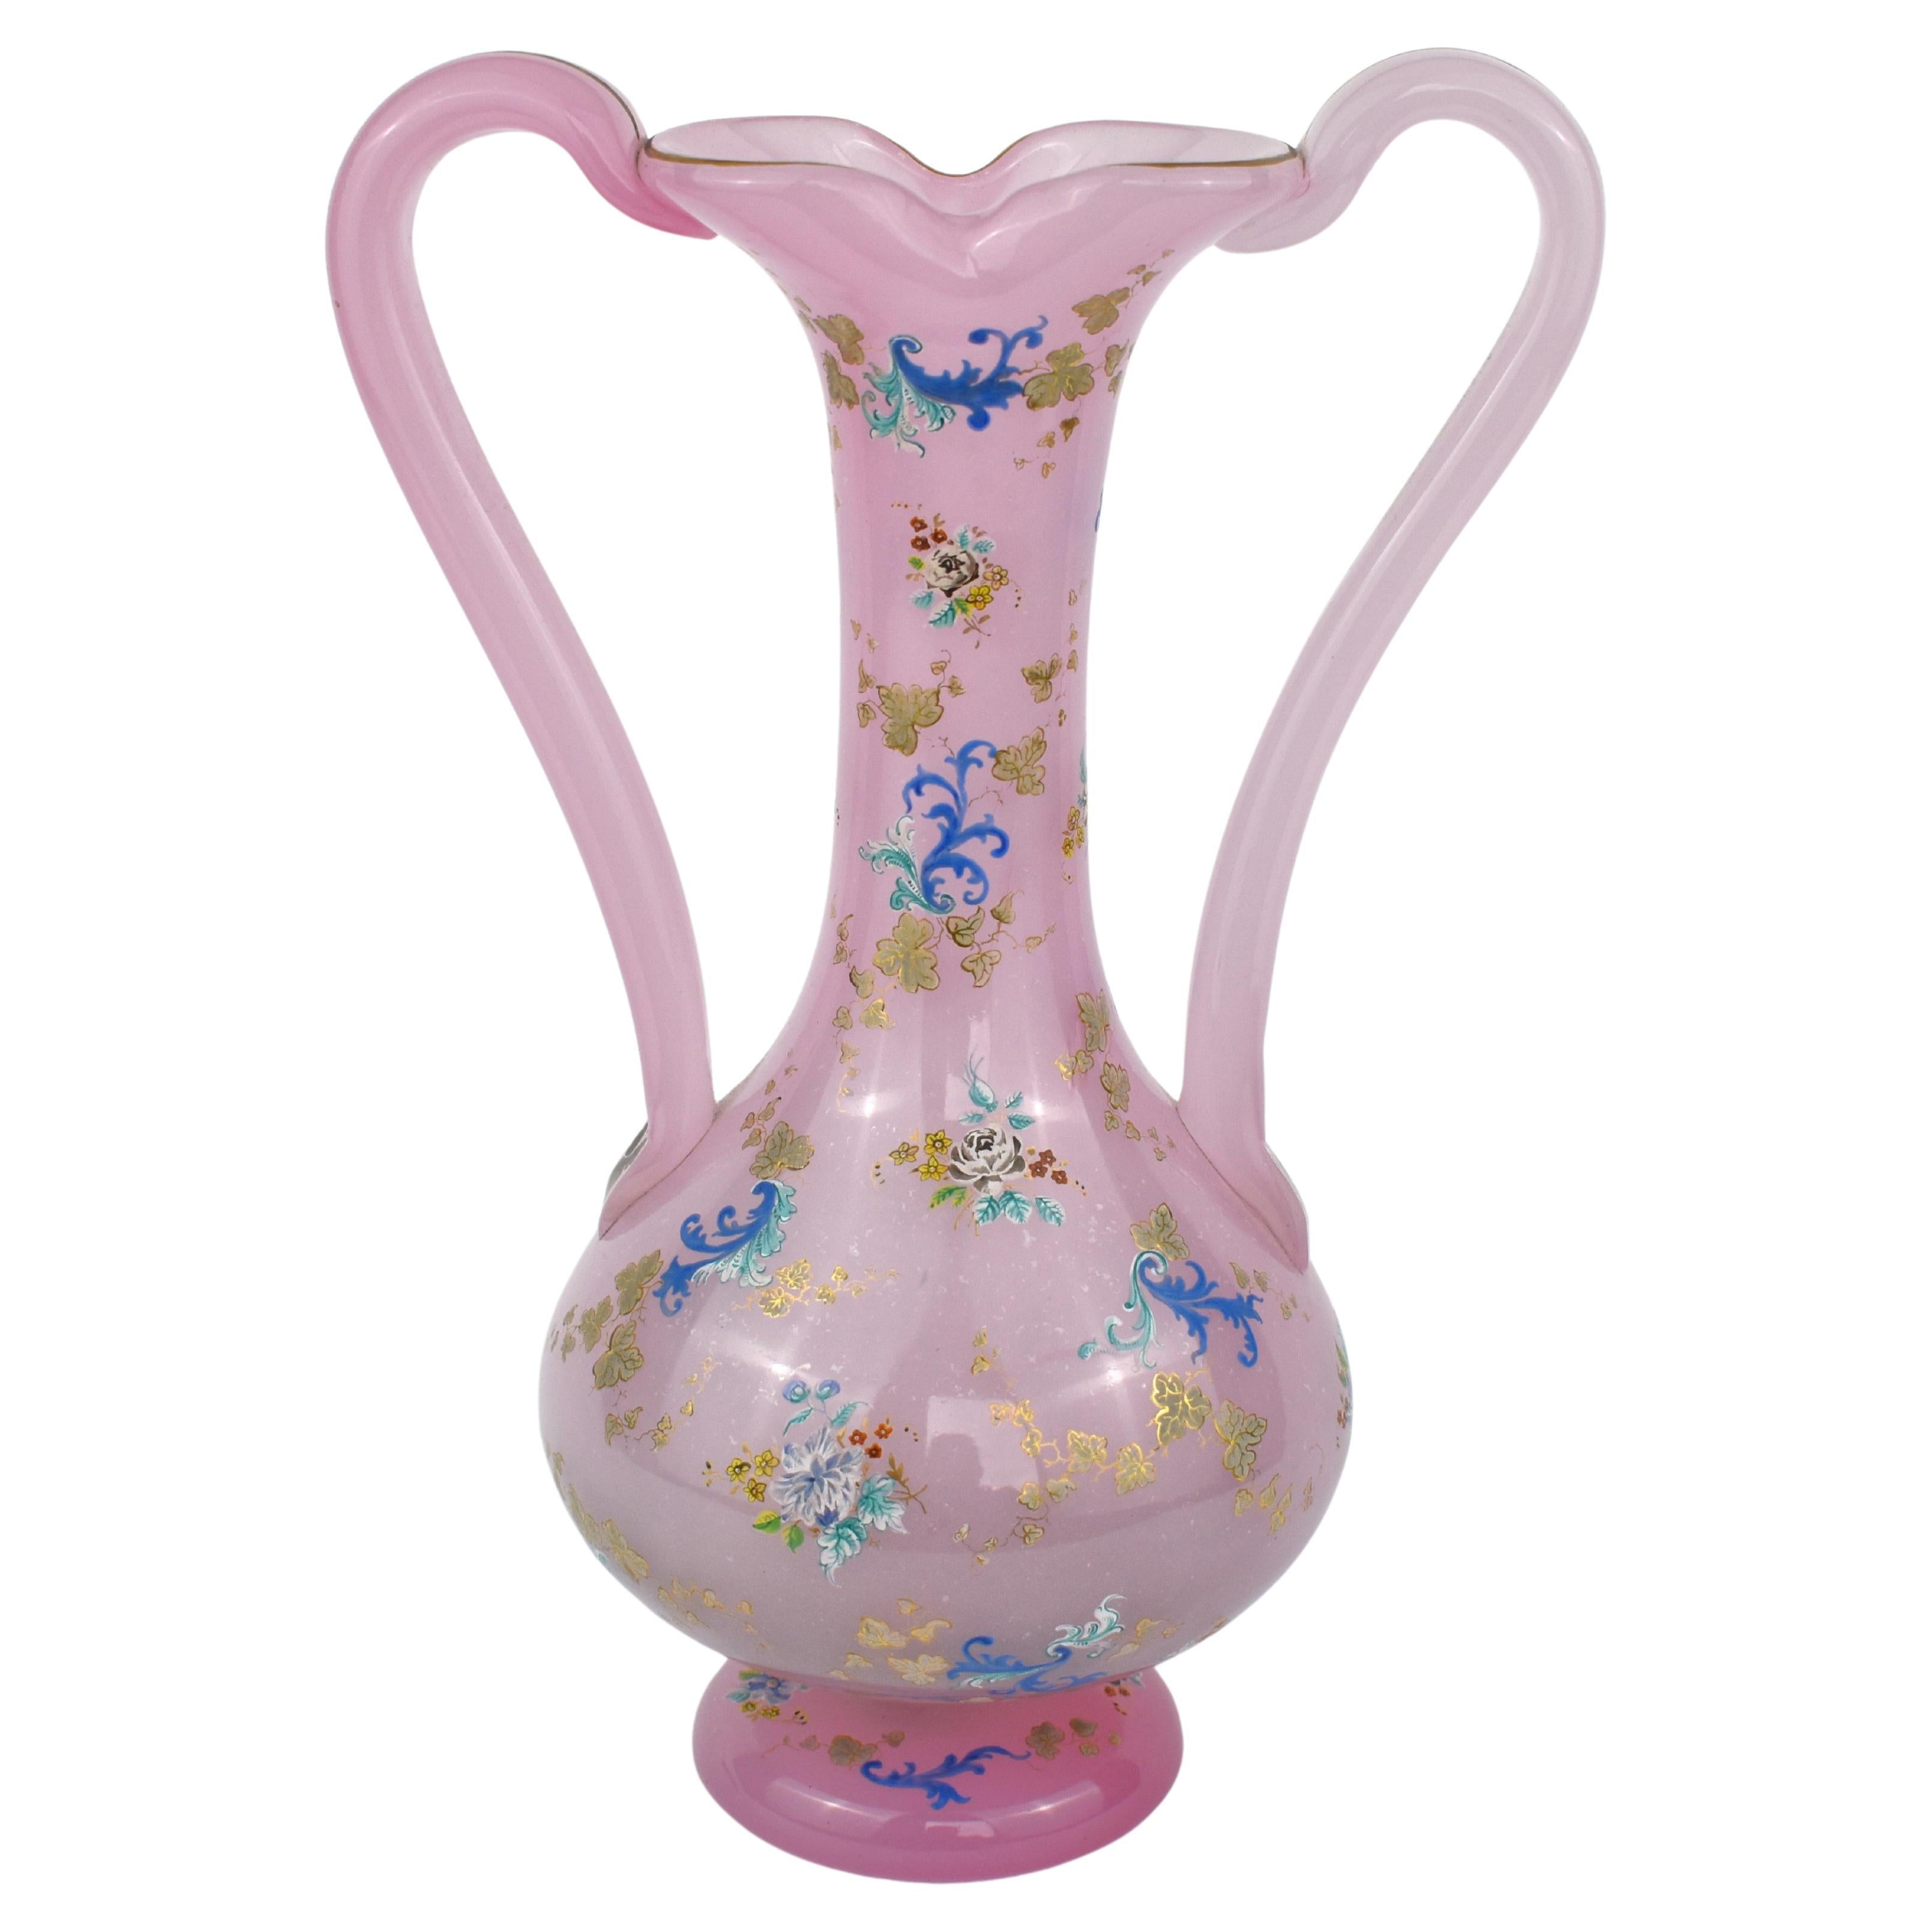 Außergewöhnliche Vase mit zwei Henkeln aus rosafarbenem Opal-Alabasterglas von Moser

Der runde Korpus ist rundherum mit Emaildekoration bemalt und reichlich mit feiner, farbenfroher Emaille verziert, die Blumen, Ranken und Rankenwerk